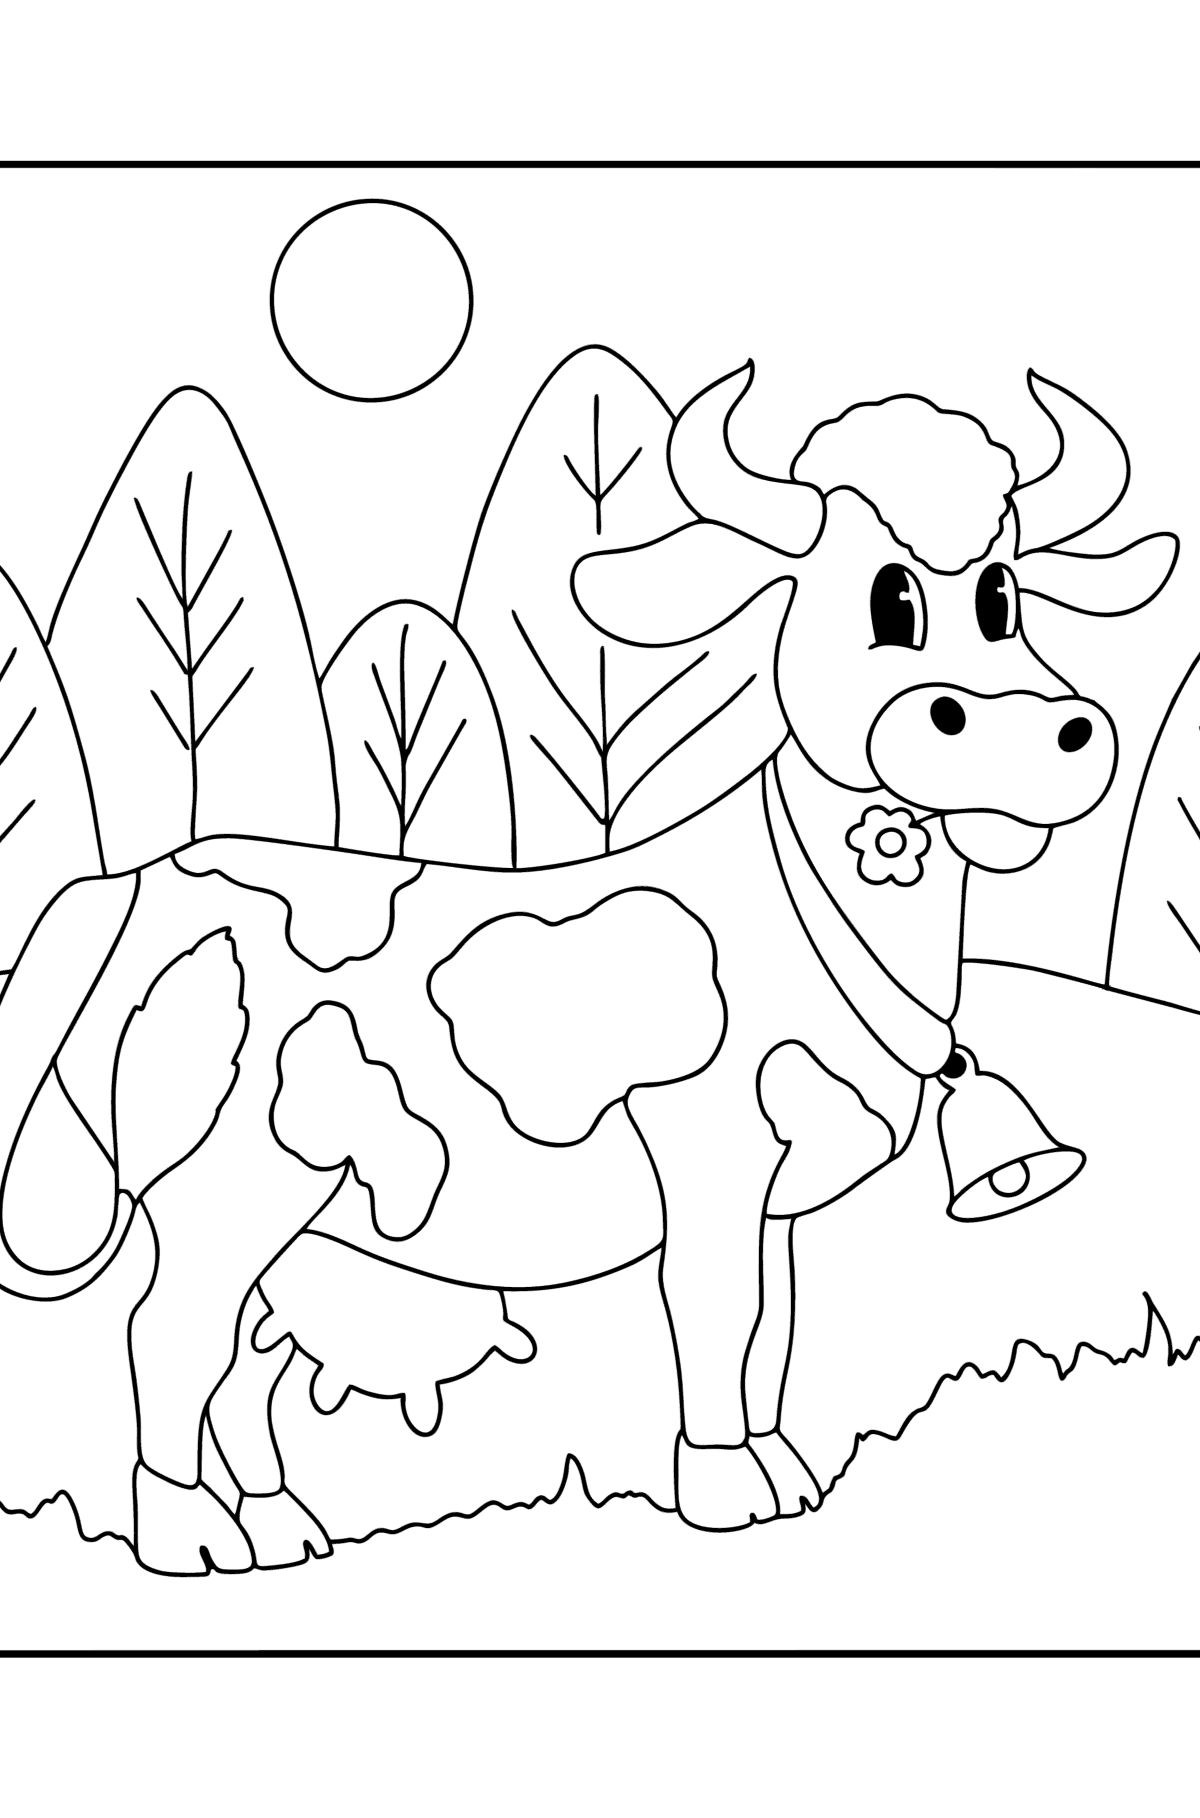 Mala krowa kolorowanka - Kolorowanki dla dzieci